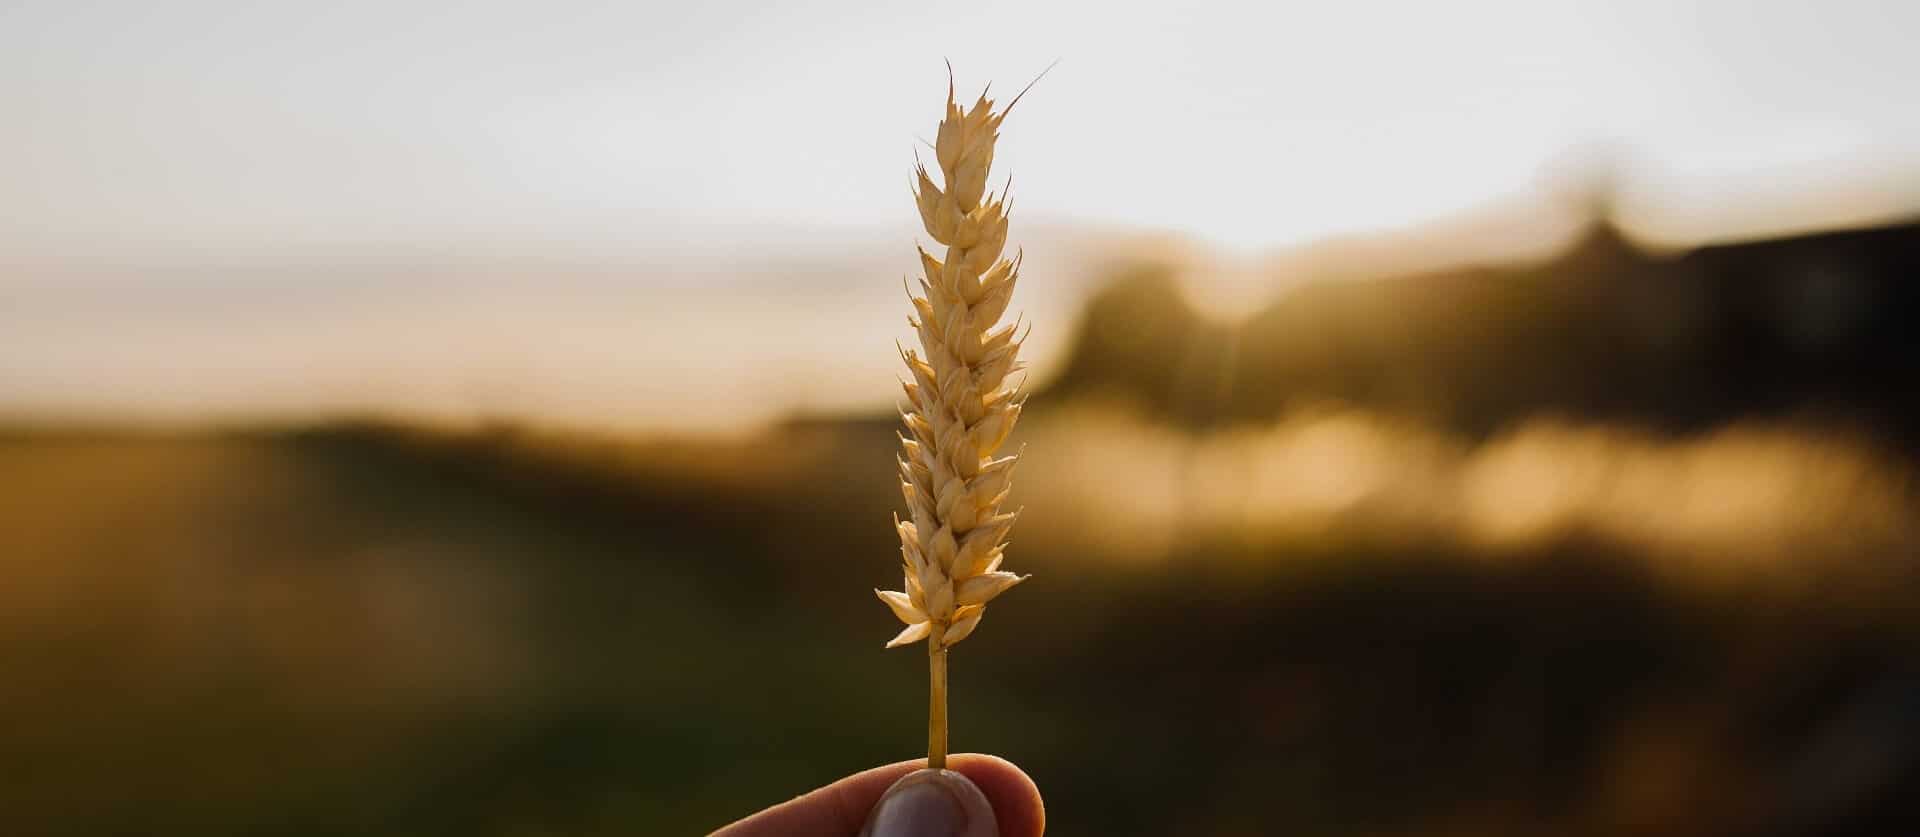 Qu’est-ce que le son d’avoine et de blé ?